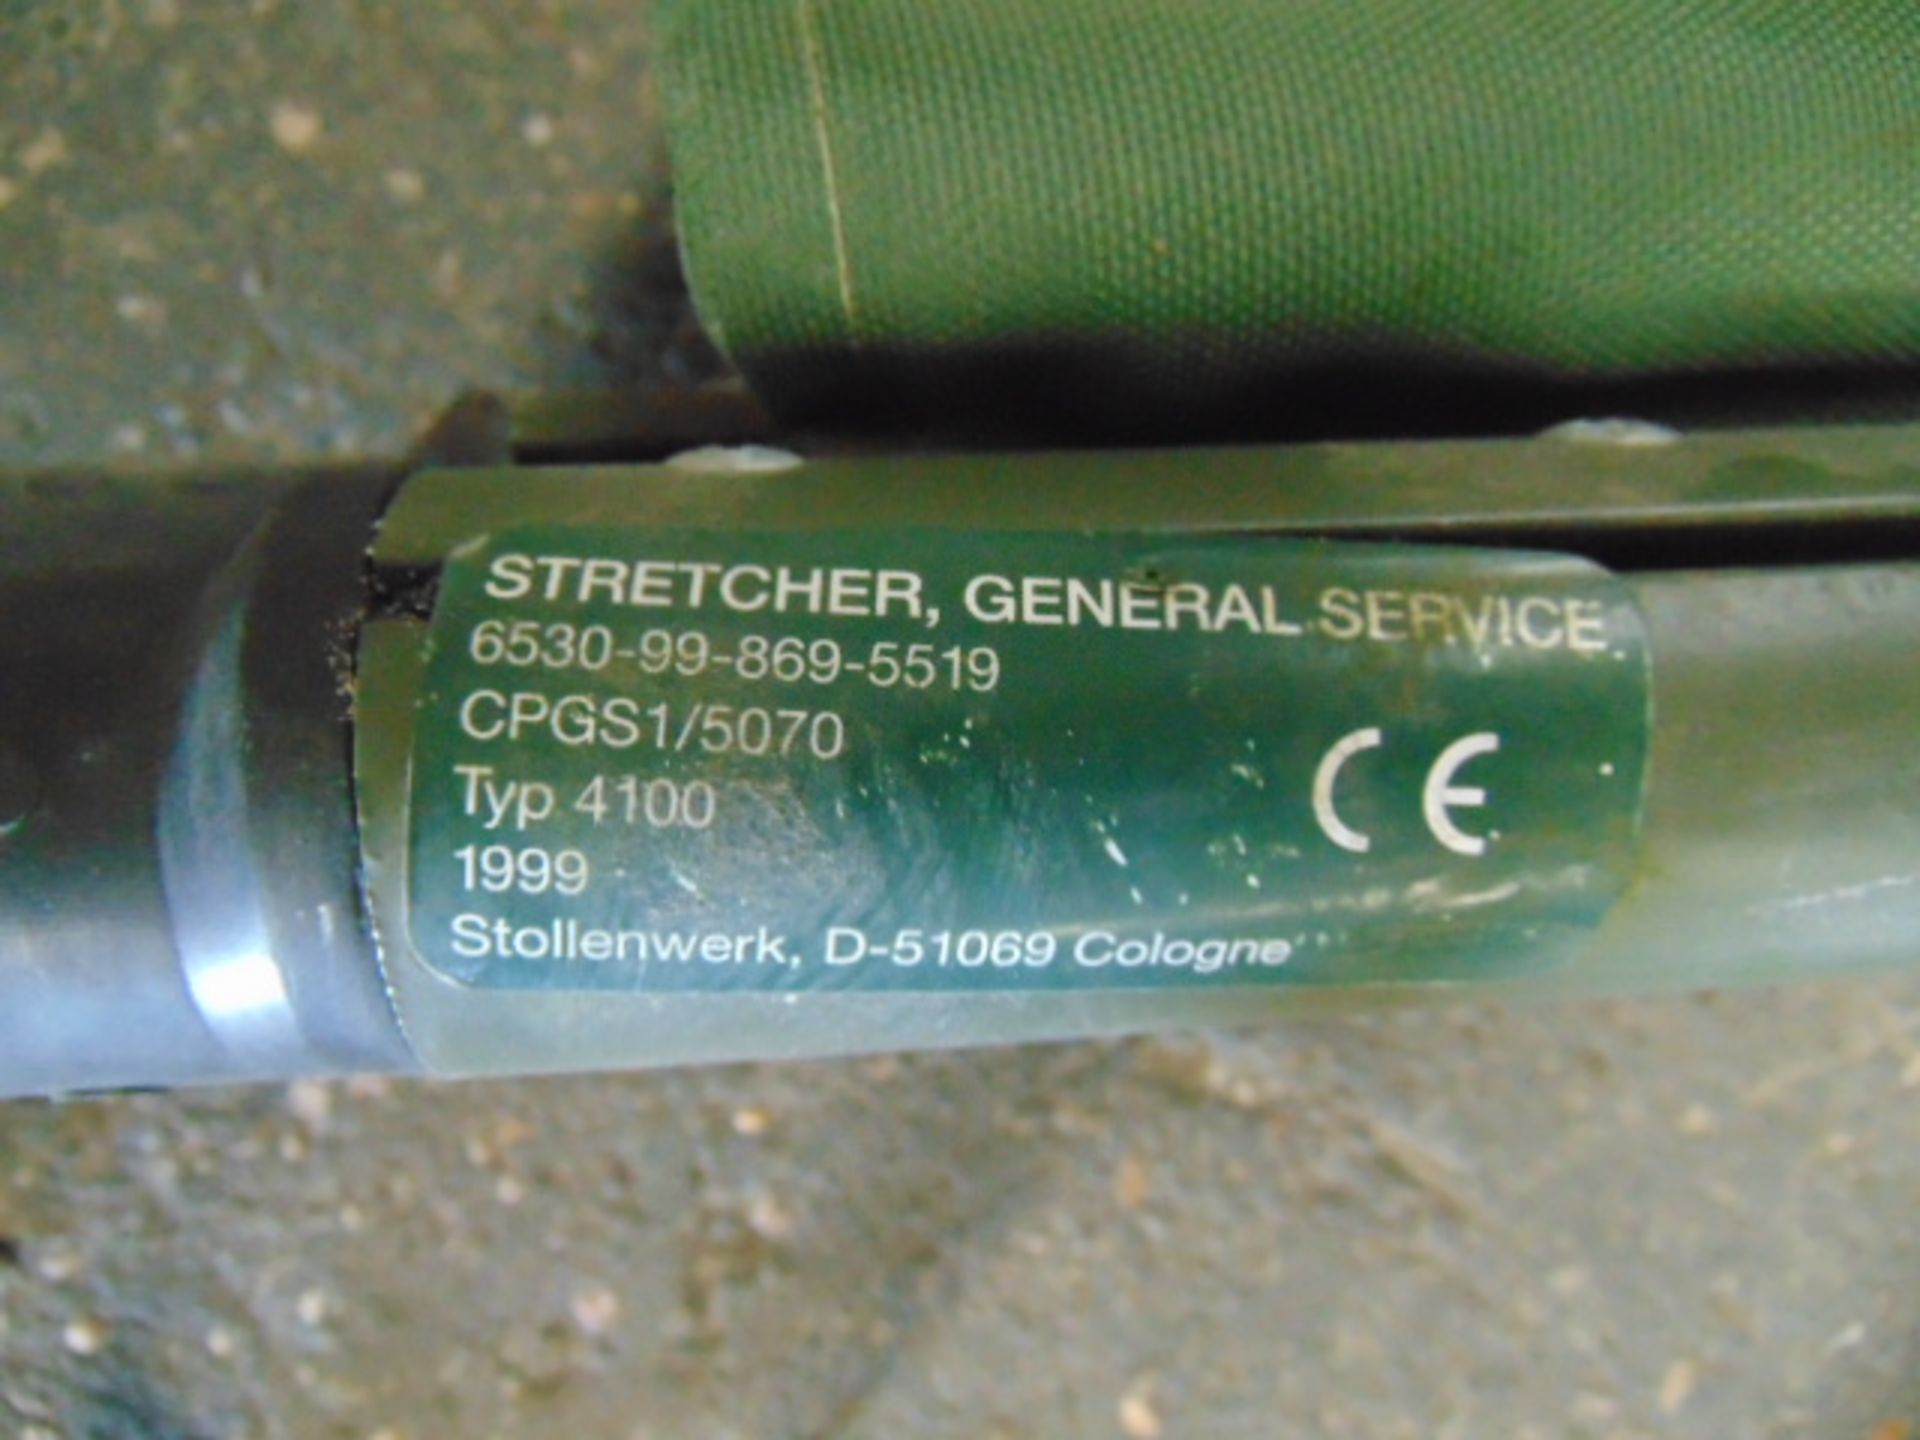 General Service Stretcher - Bild 4 aus 6